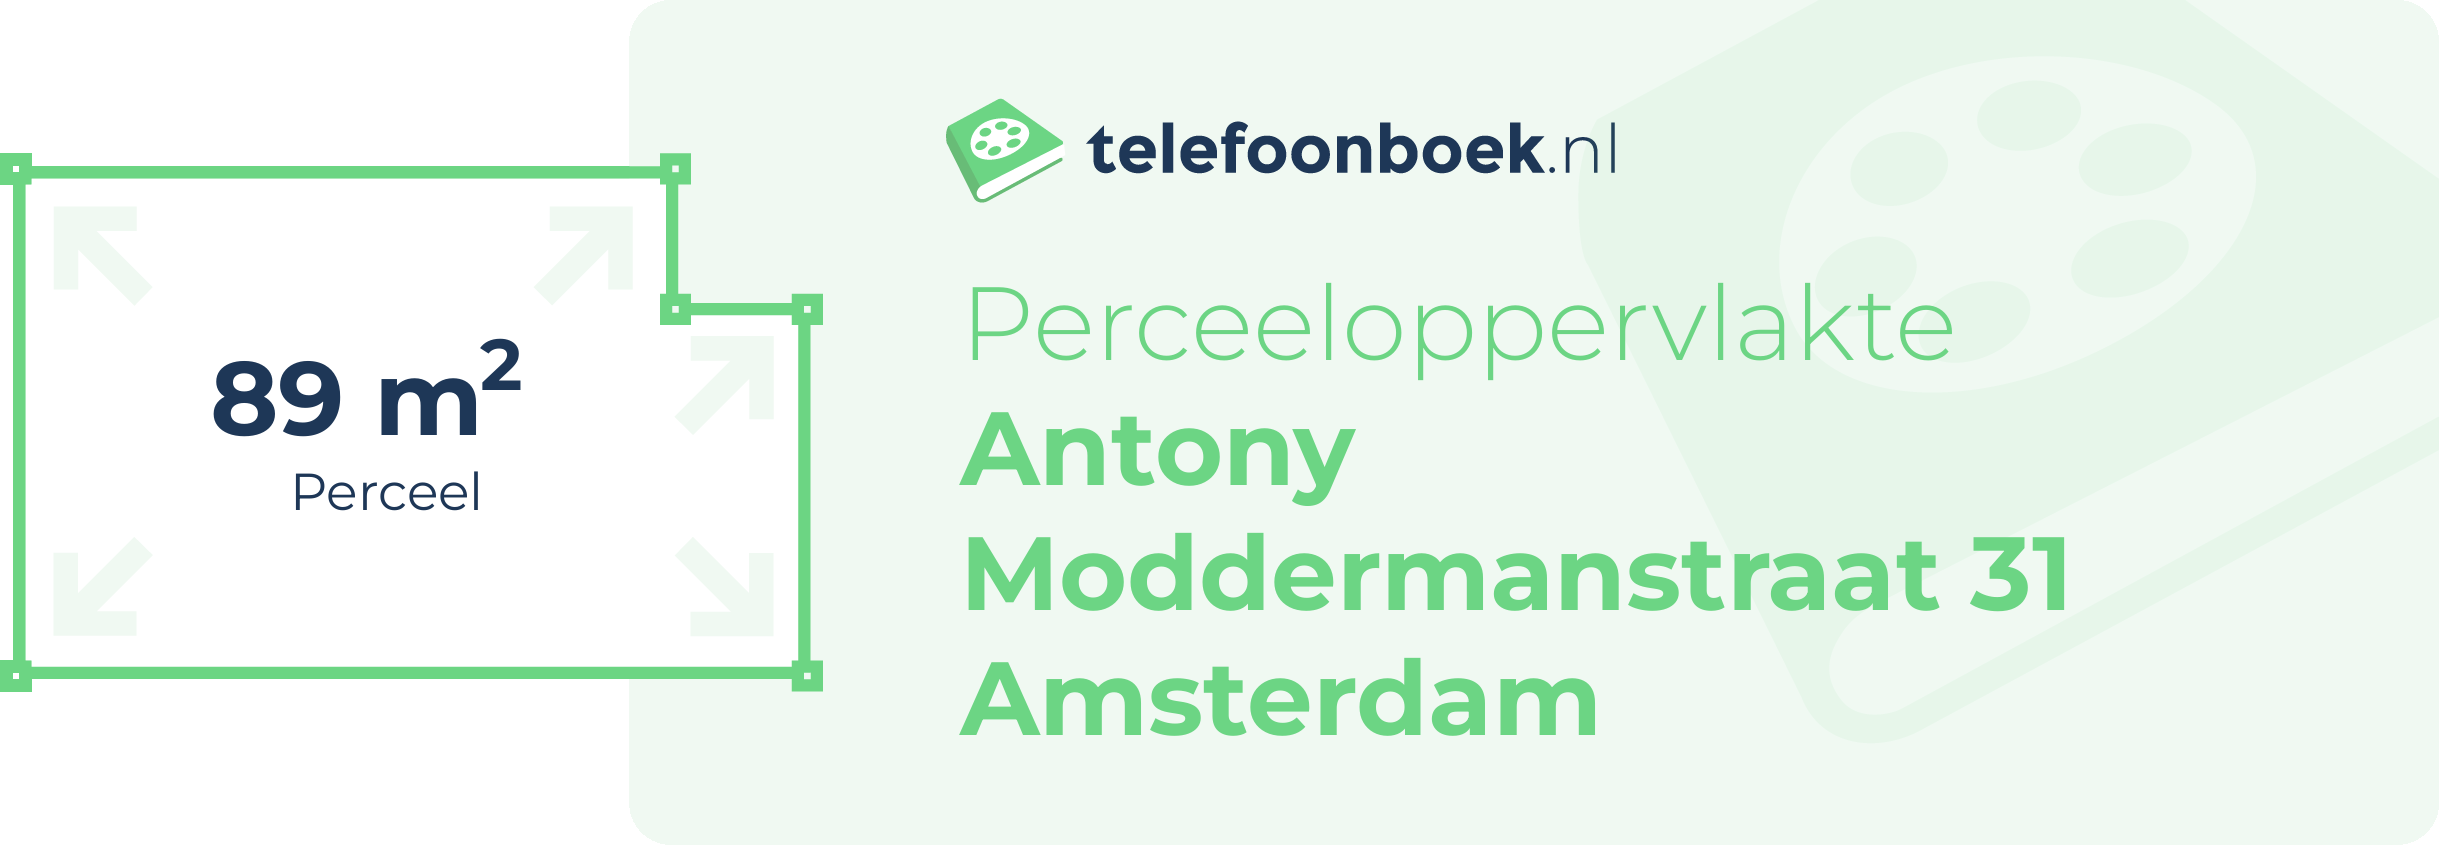 Perceeloppervlakte Antony Moddermanstraat 31 Amsterdam